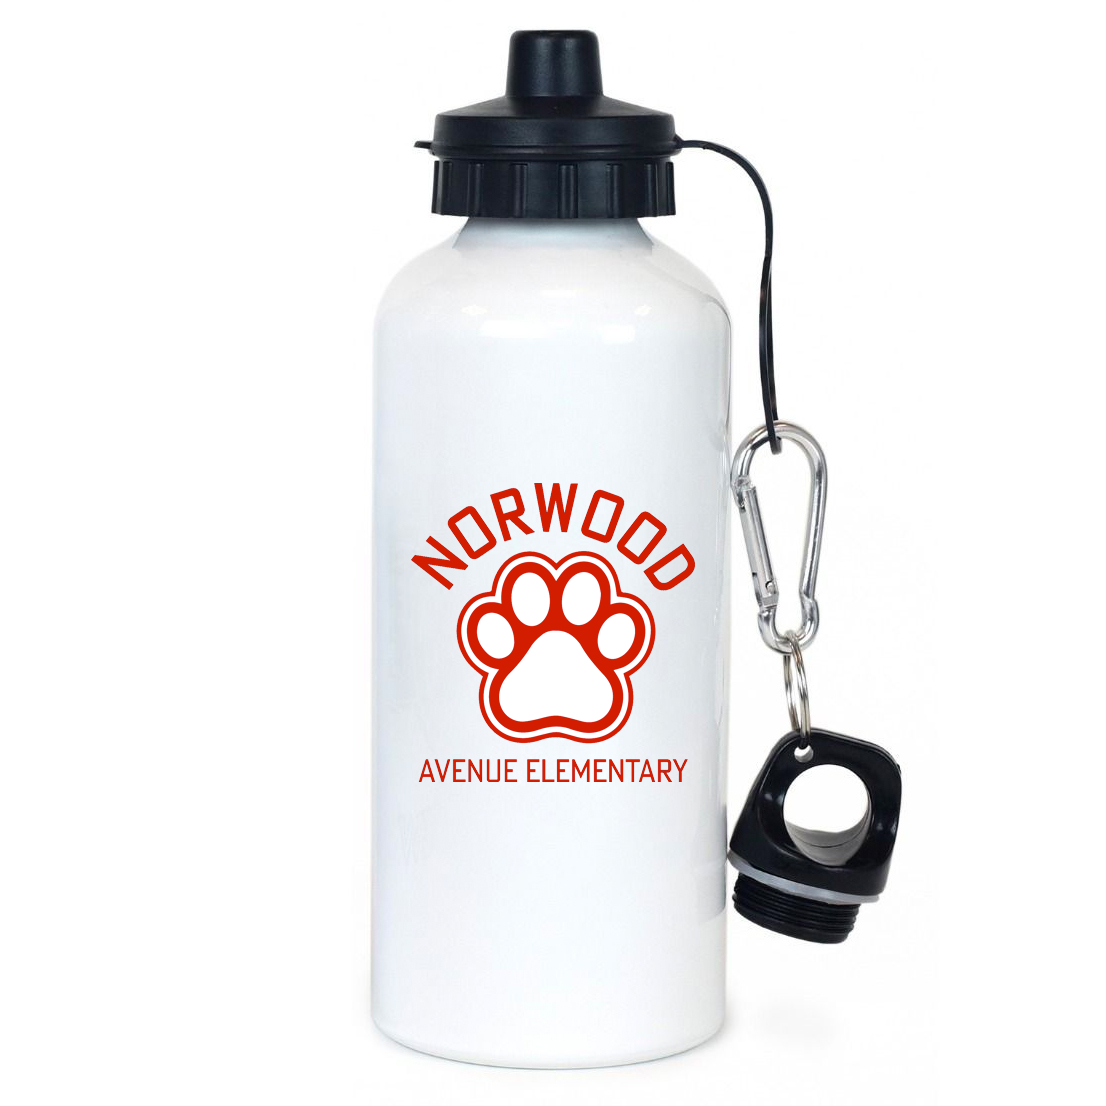 Norwood Ave. Elementary School Team Water Bottle